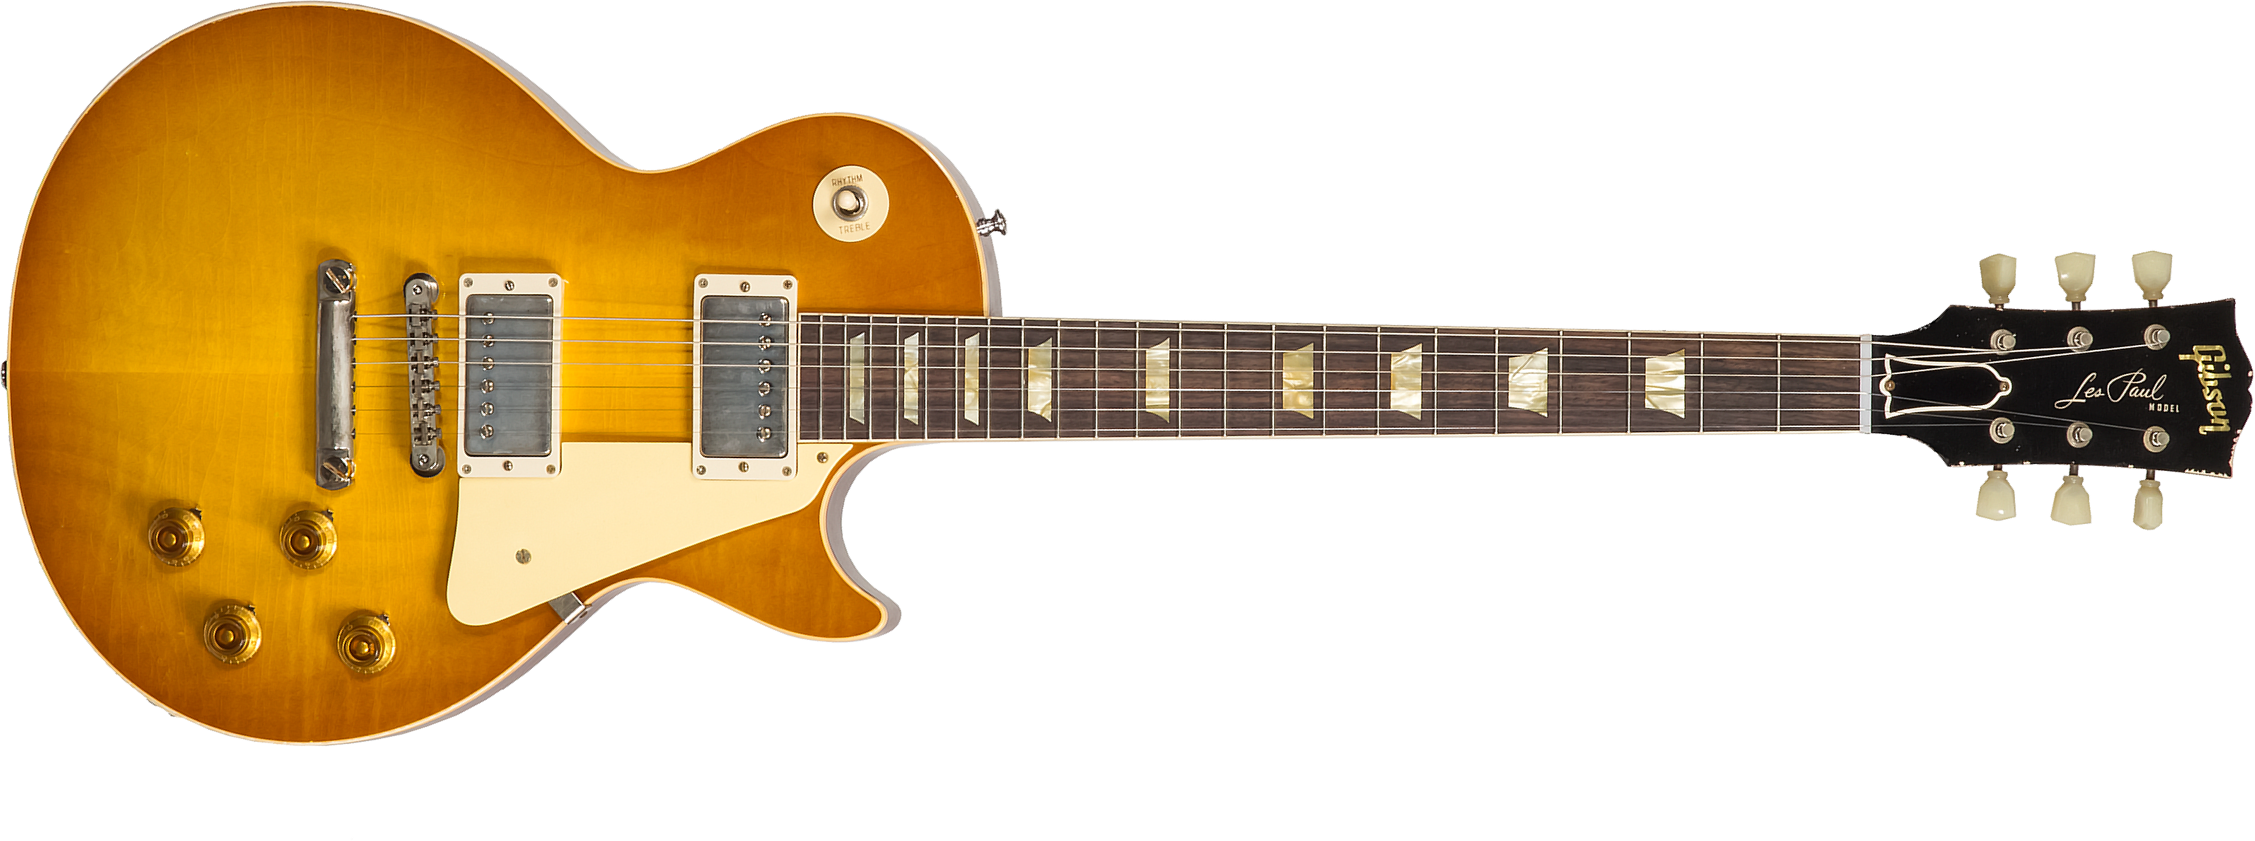 Gibson Custom Shop Murphy Lab Les Paul Standard 1958 Reissue 2h Ht Rw #821279 - Light Aged Lemon Burst - Guitarra eléctrica de corte único. - Main pic